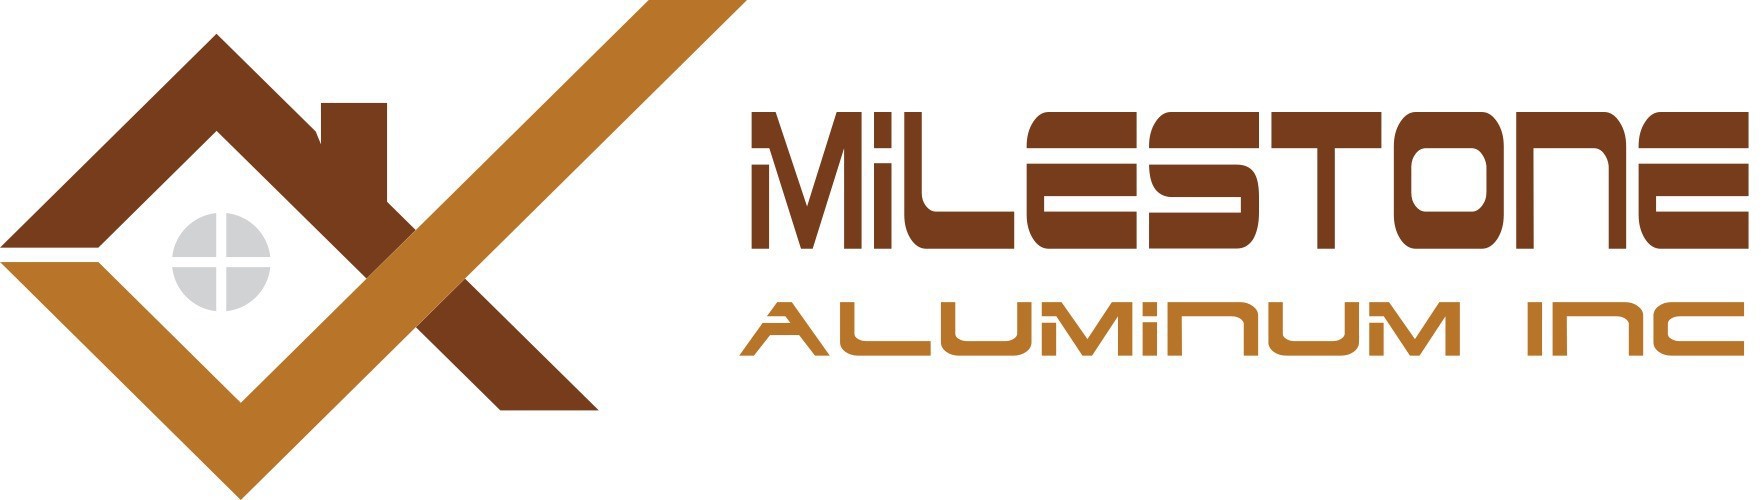 1. Milestone Aluminum Inc